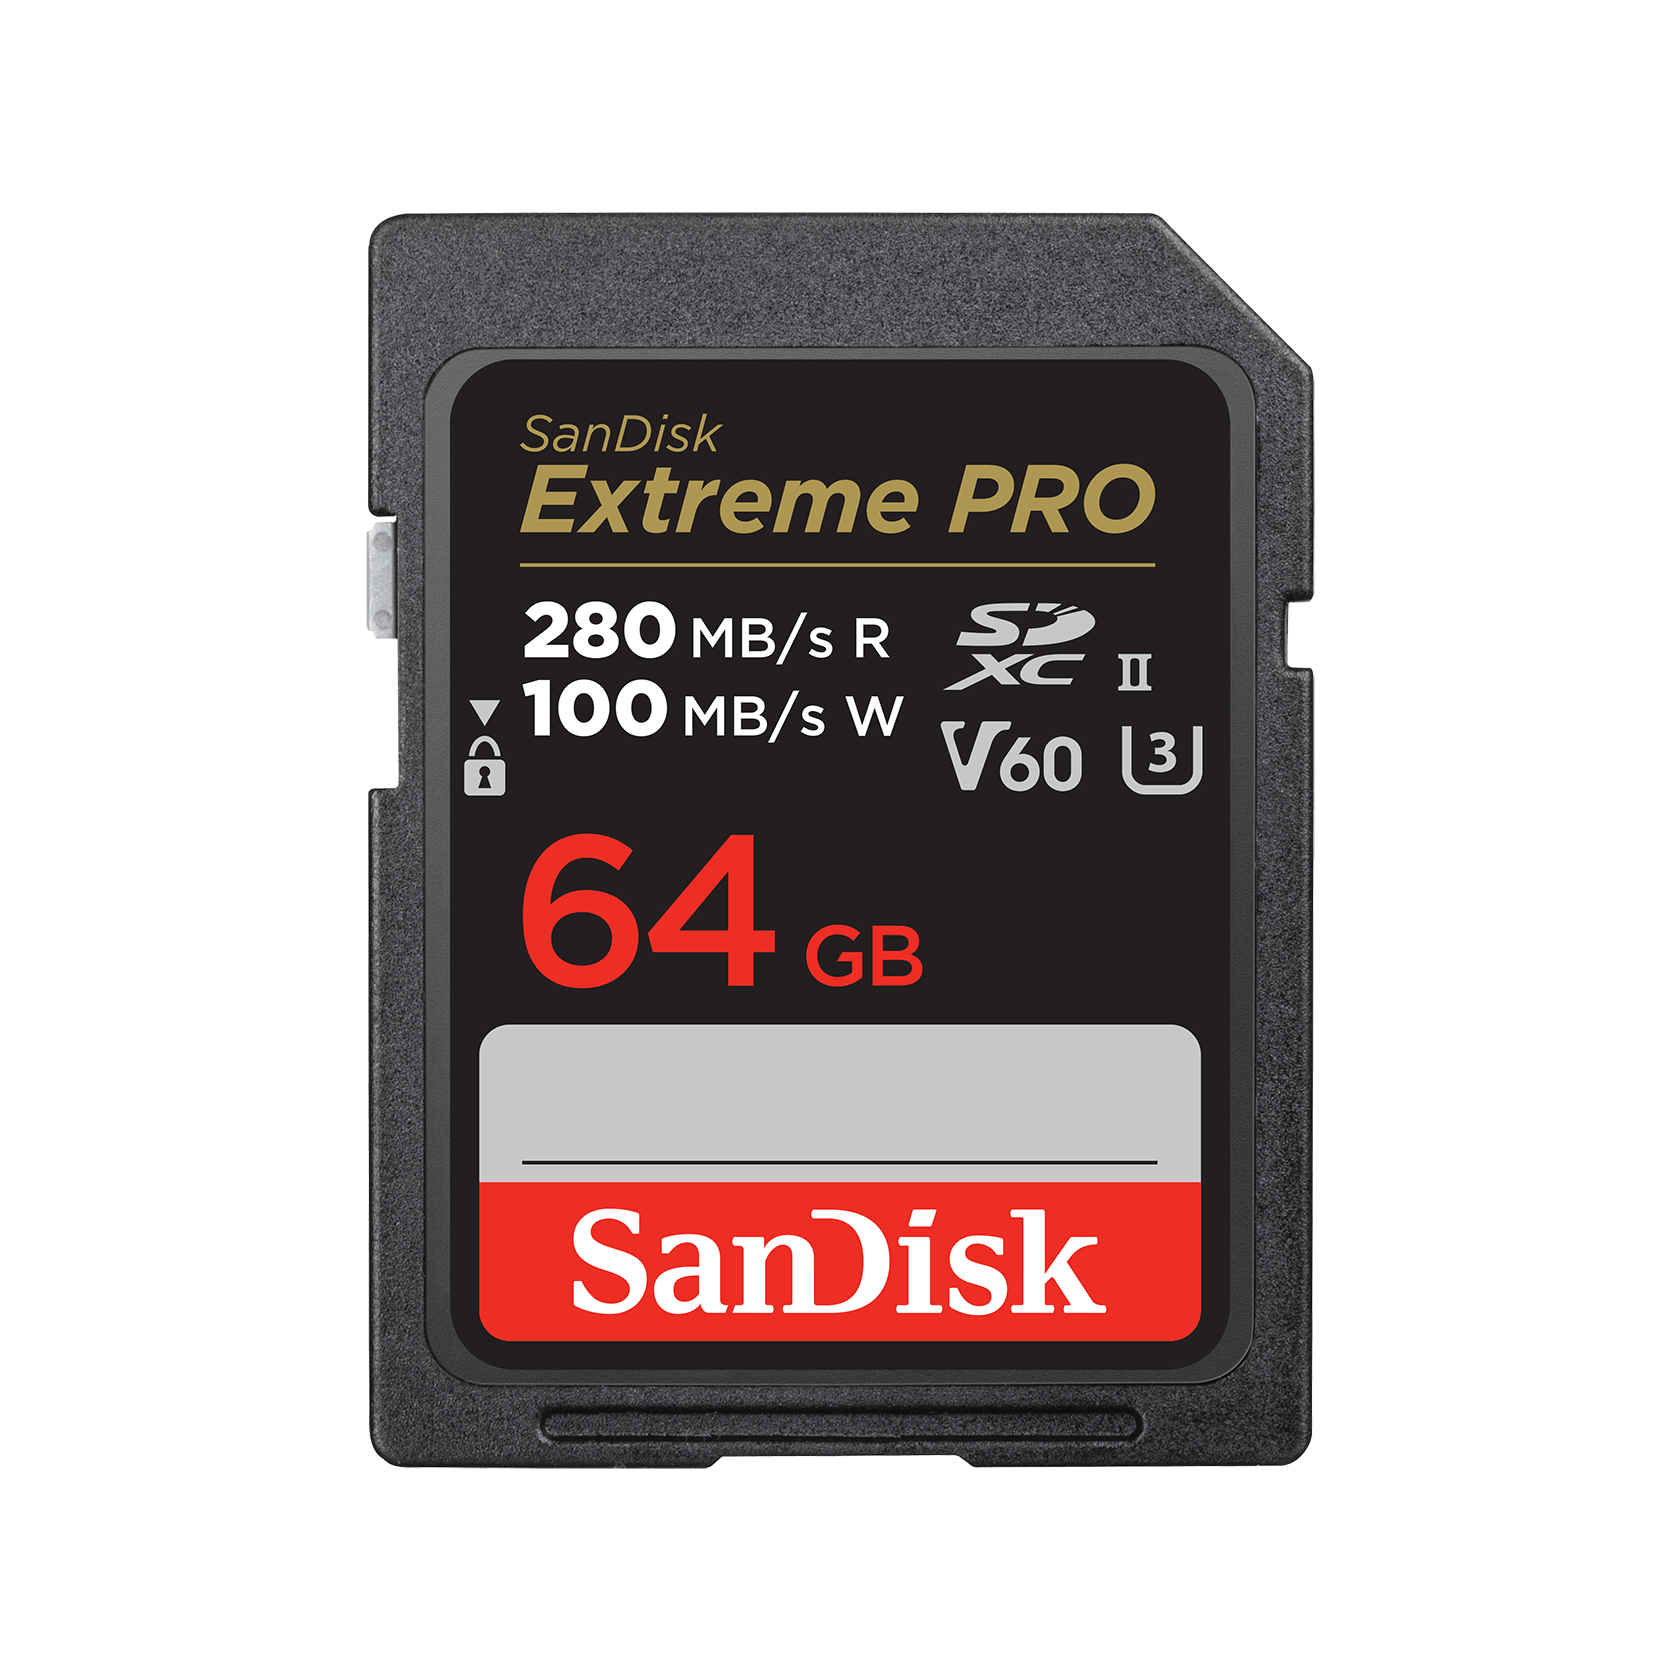 Carte mémoire SanDisk Extreme PRO SDXC UHS-II de classe V60